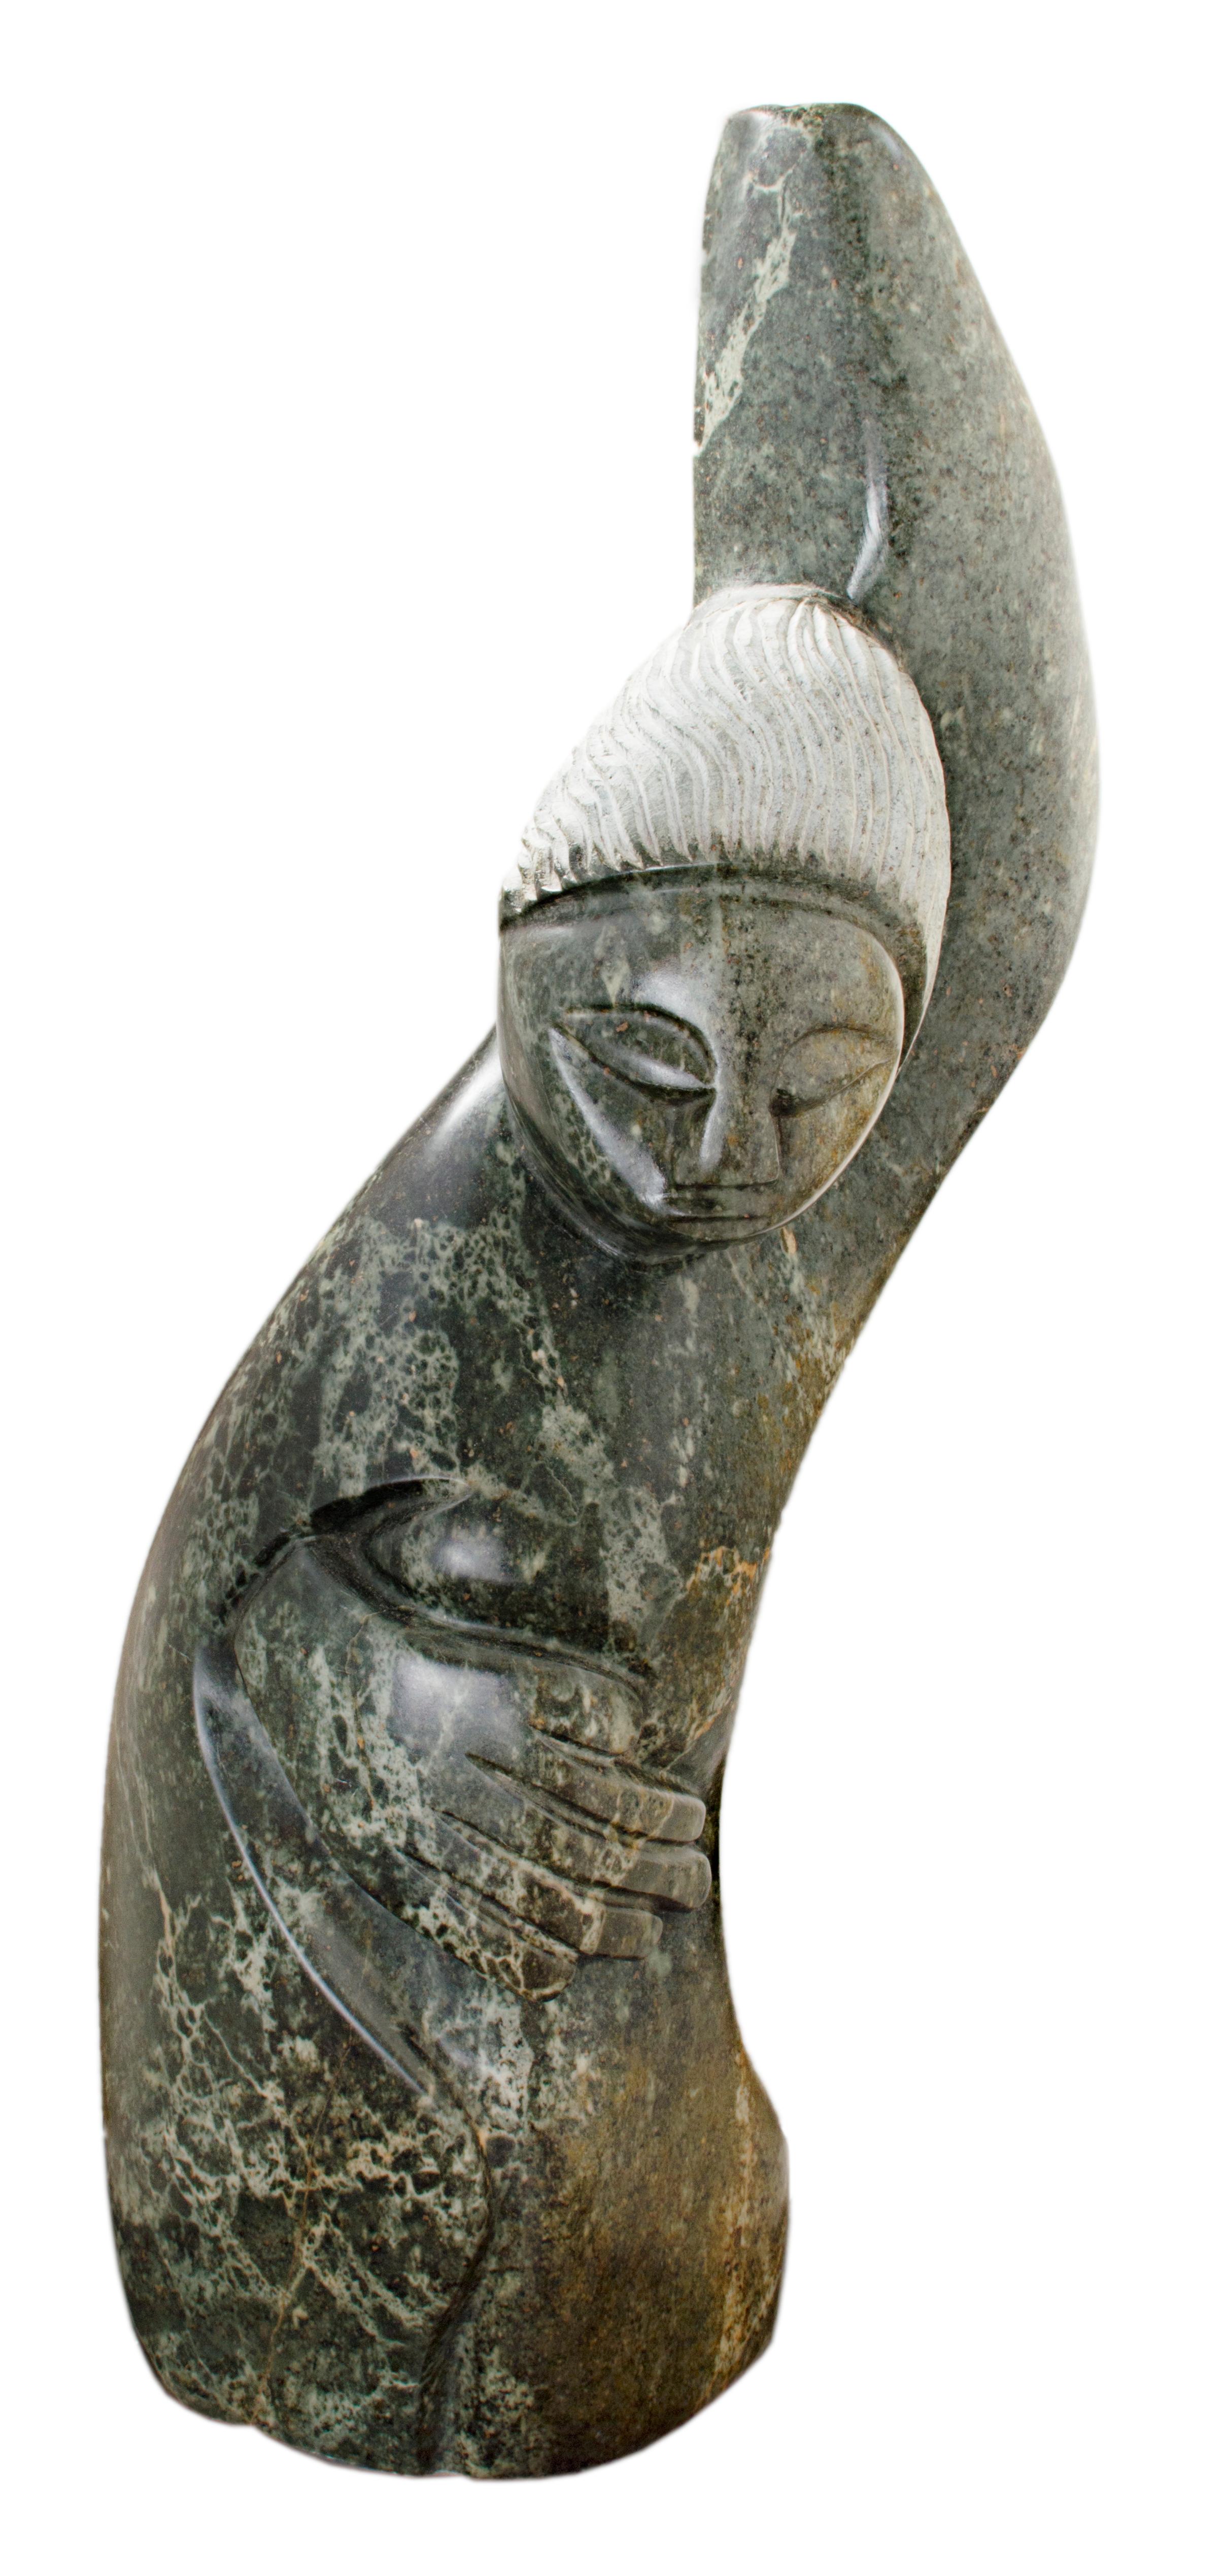 "Mon cher ami" est une pierre serpentine verte signée par Chemedu Jemali qui est un africain Shona. Le corps du personnage est une forme fluide avec la main gauche dans le ciel et la main droite enroulée autour du ventre. La figure est lissée et